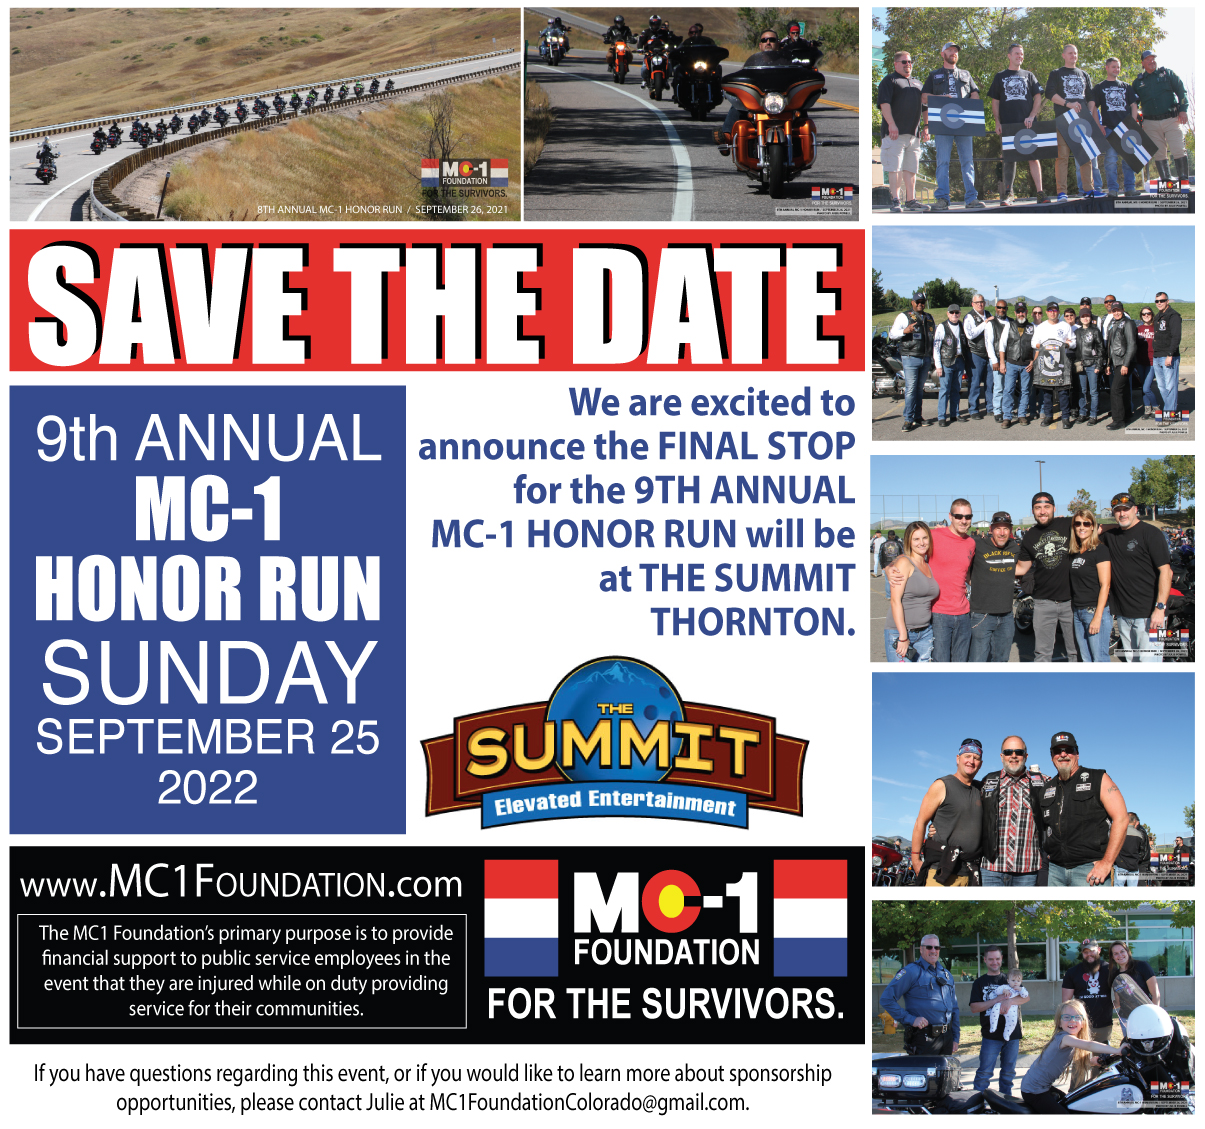 9th Annual MC-1 Foundation HONOR RUN